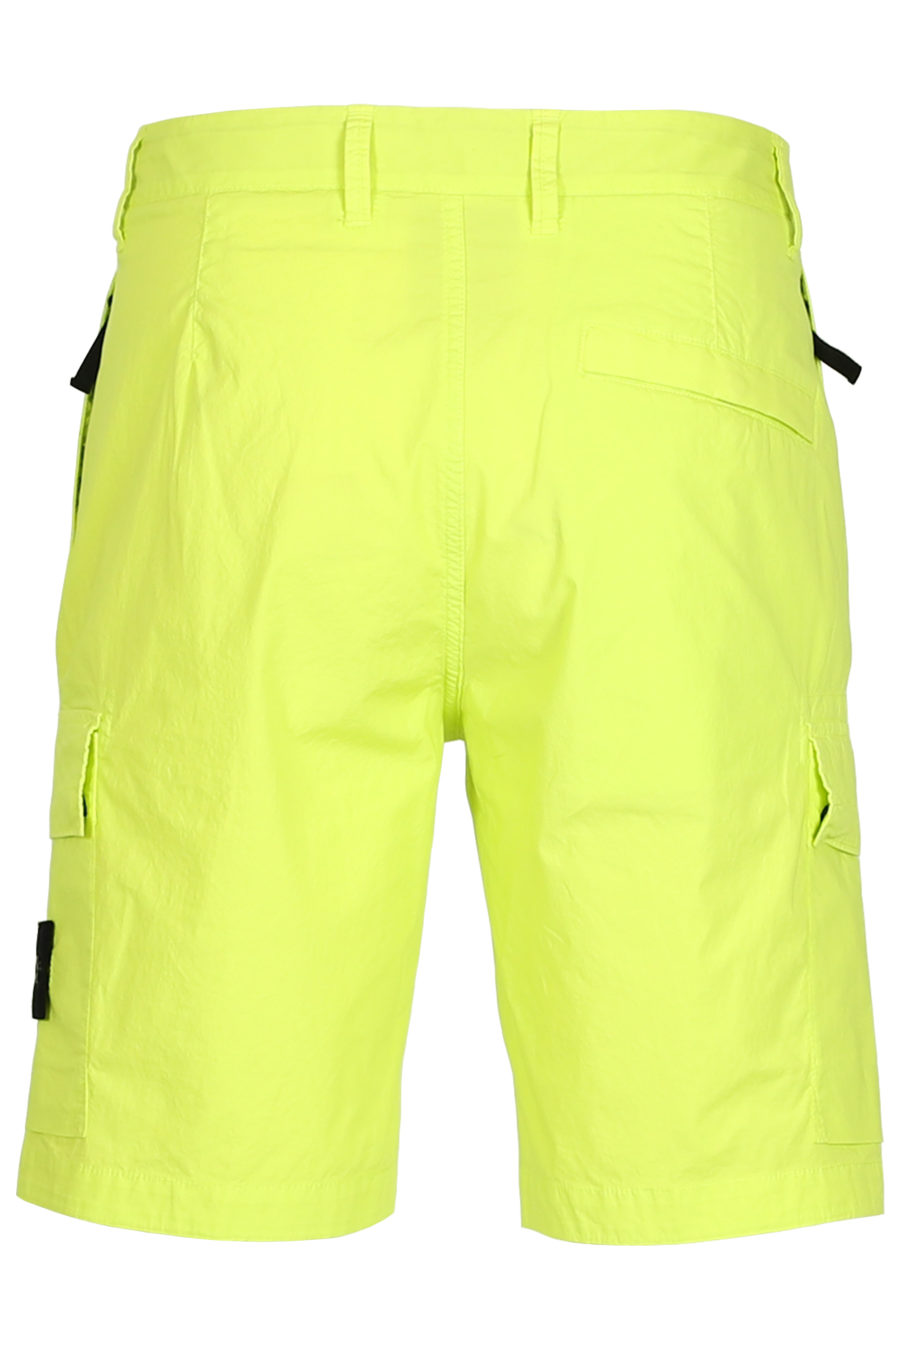 Pantalón corto verde lima - IMG 3765